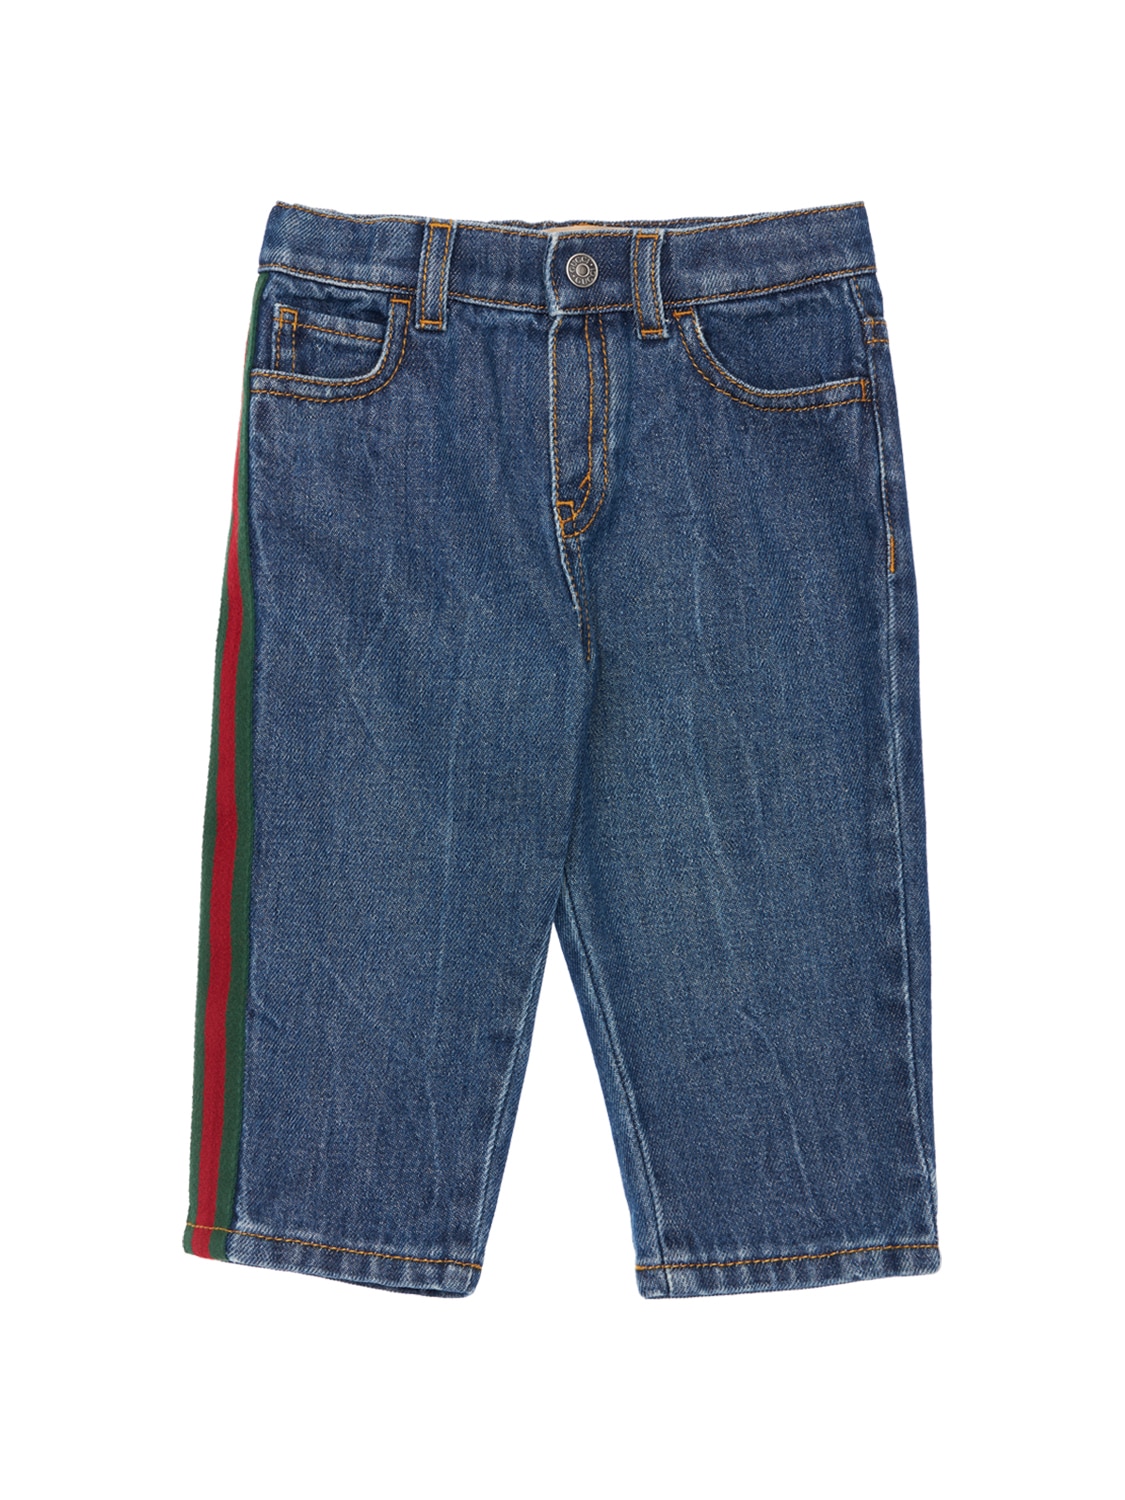 Gucci Kids' Cotton Denim Jeans W/ Web Detail